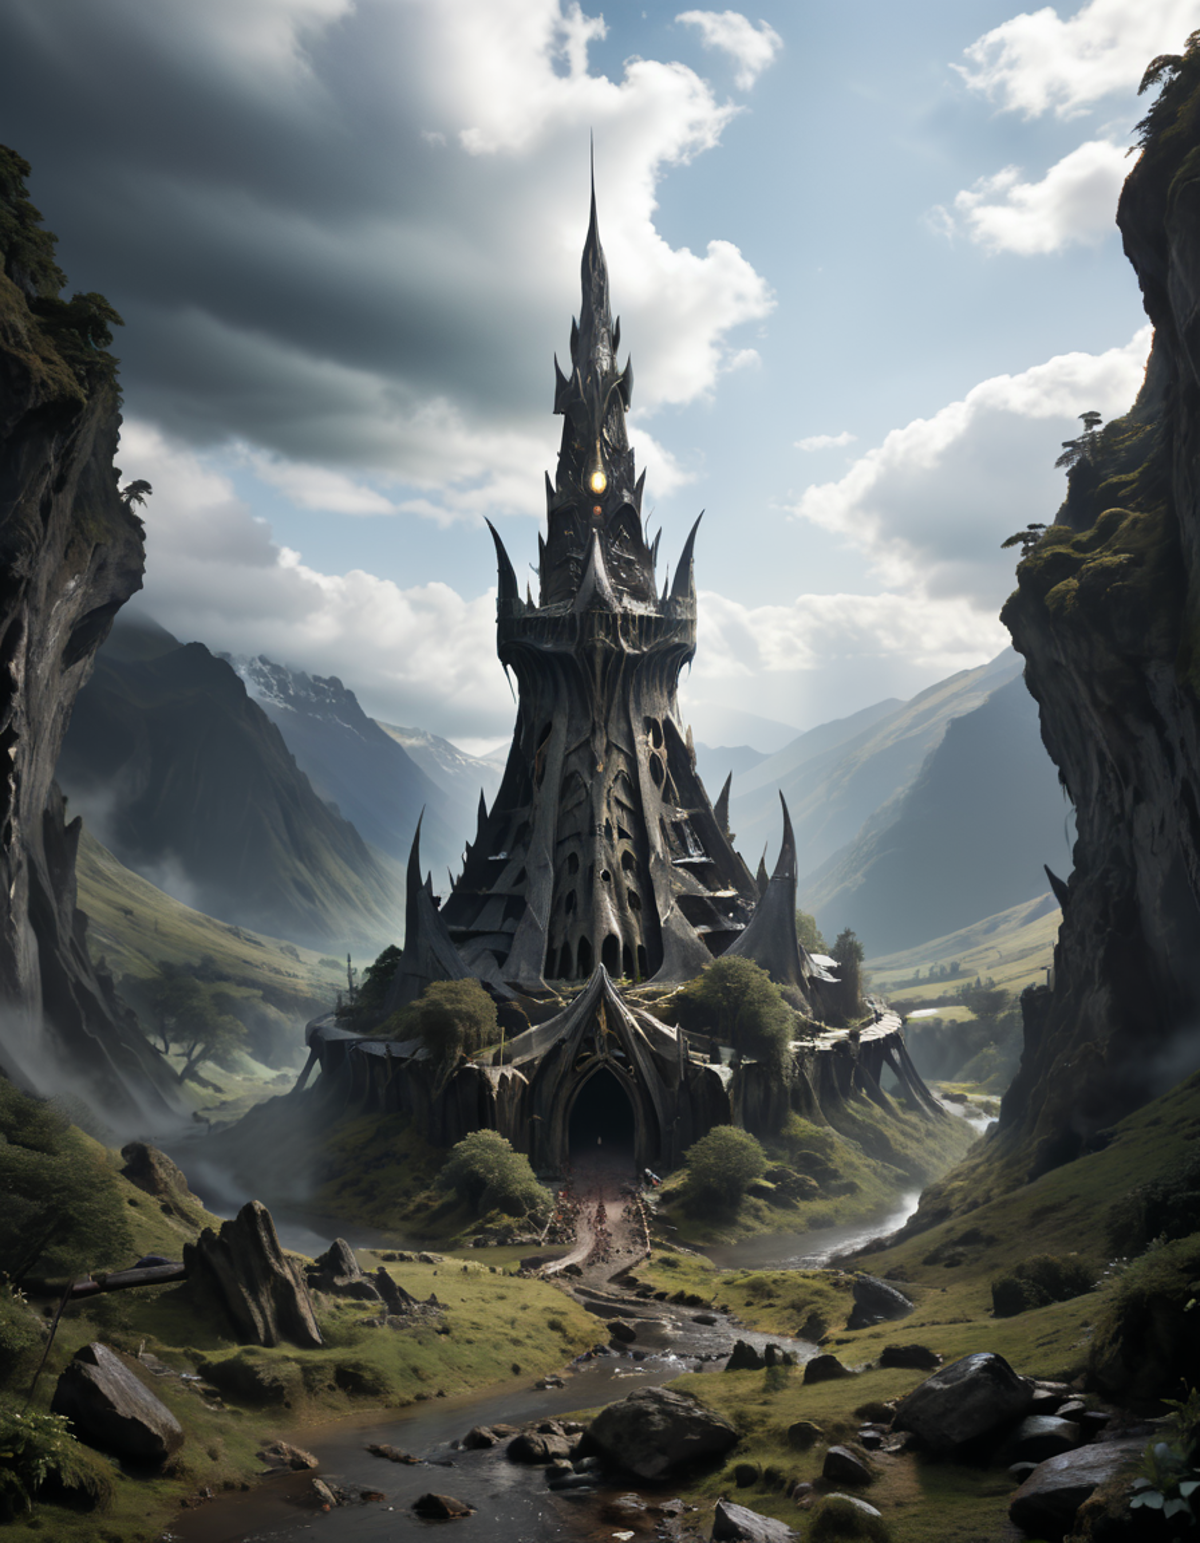 MortiferiusXL ❗ CG Dark Fantasy image by ALIENHAZE